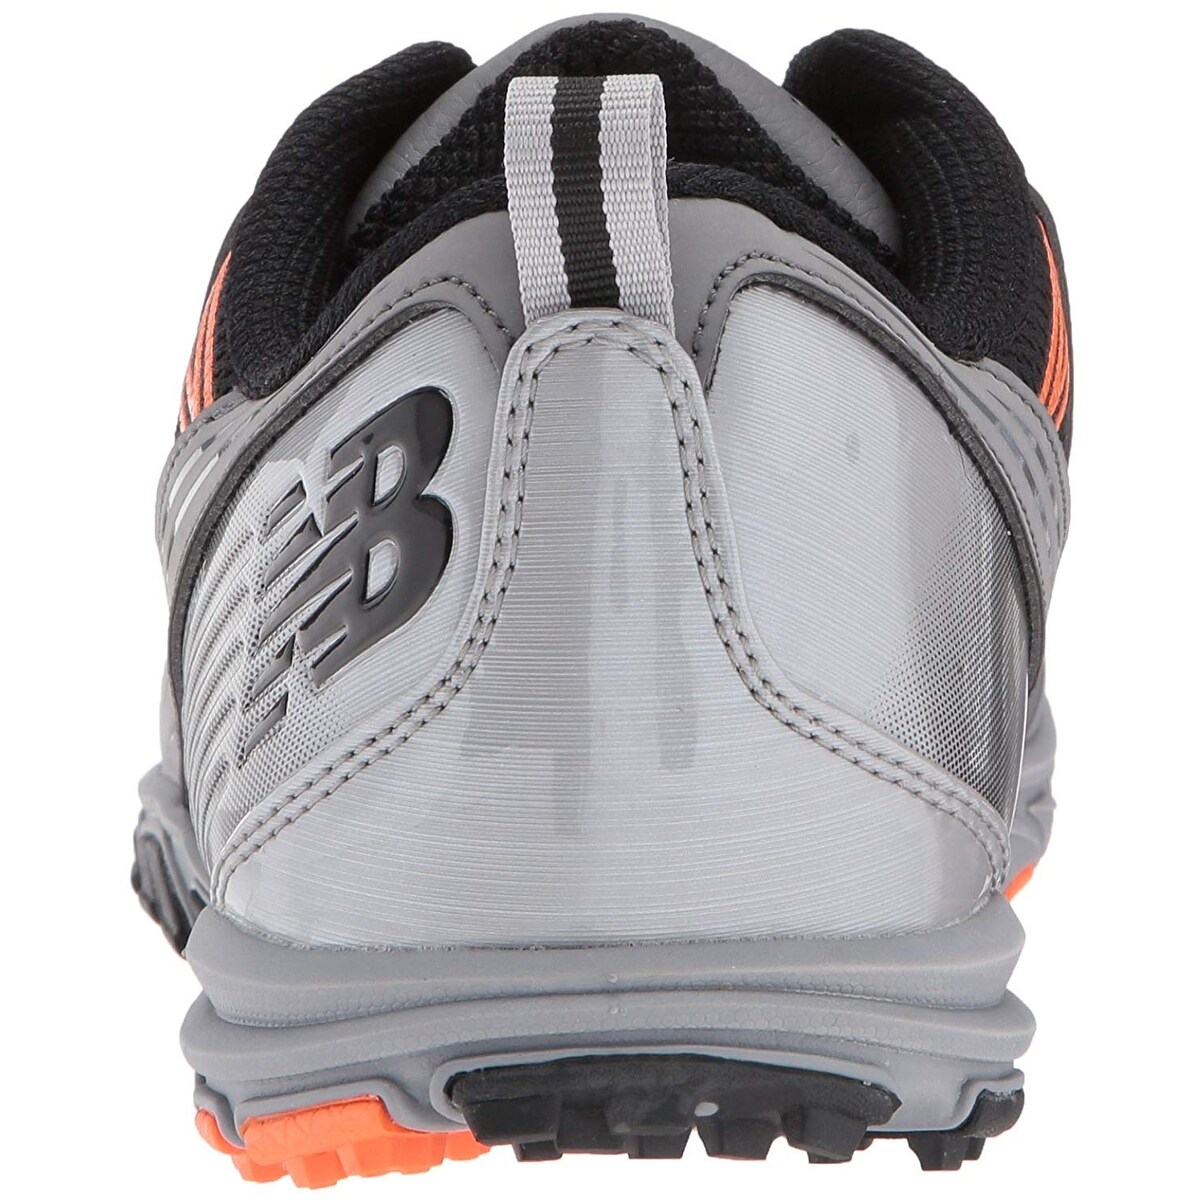 new balance men's minimus sl waterproof spikeless comfort golf shoe